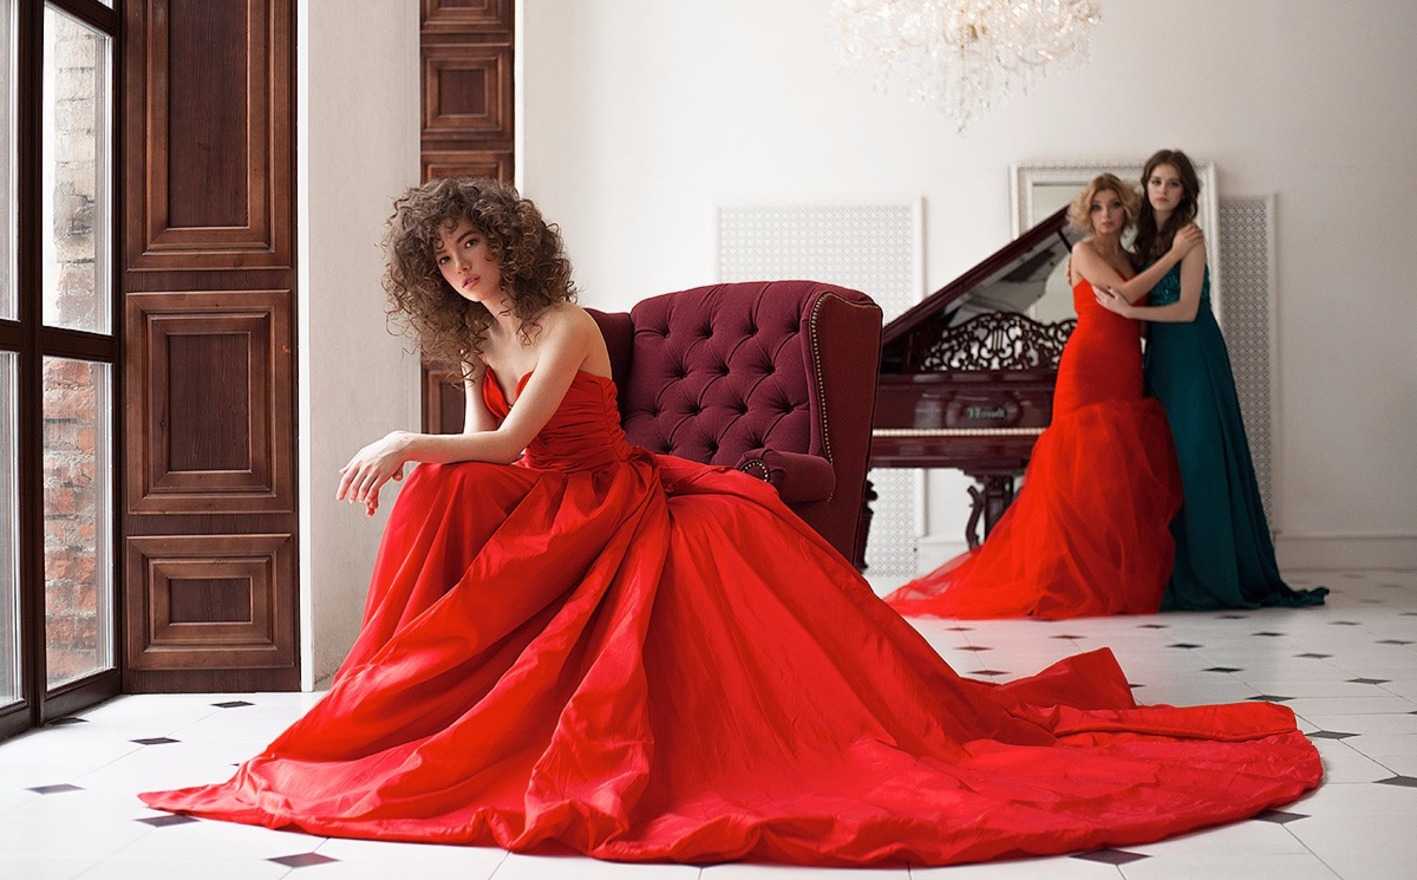 Вечерние платья напрокат в москве недорого фото с ценами